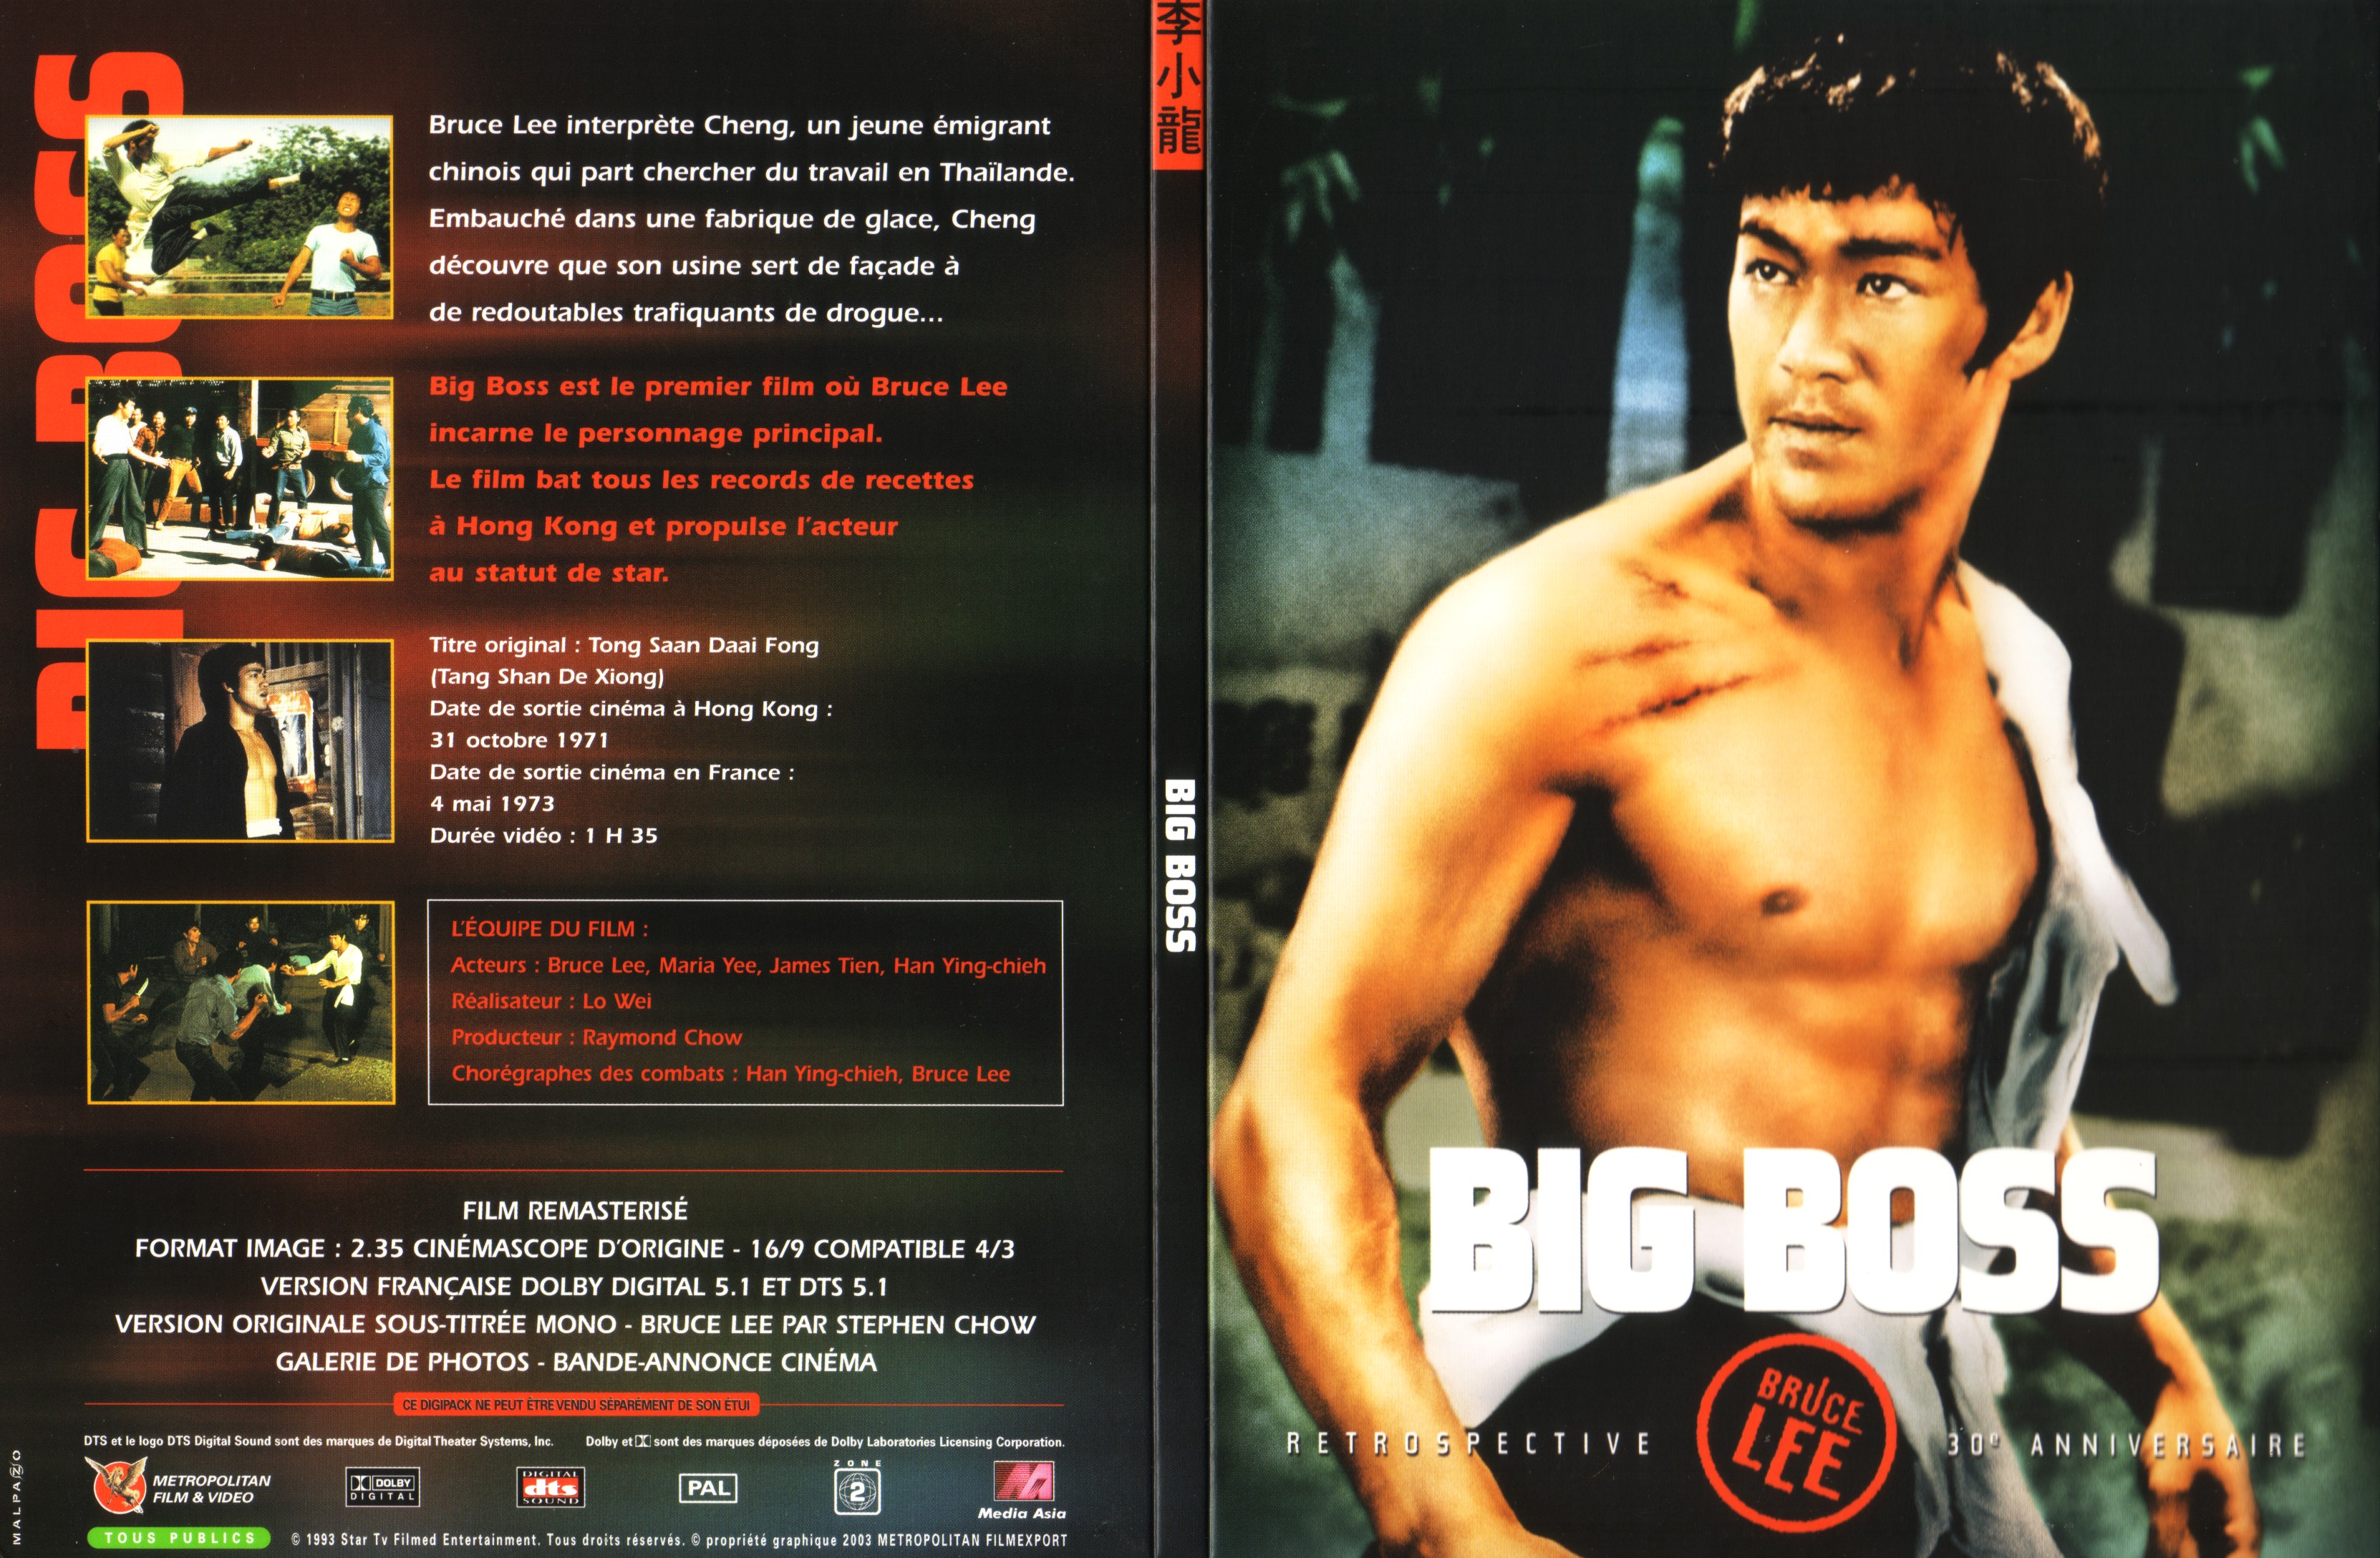 Jaquette DVD Big Boss v3